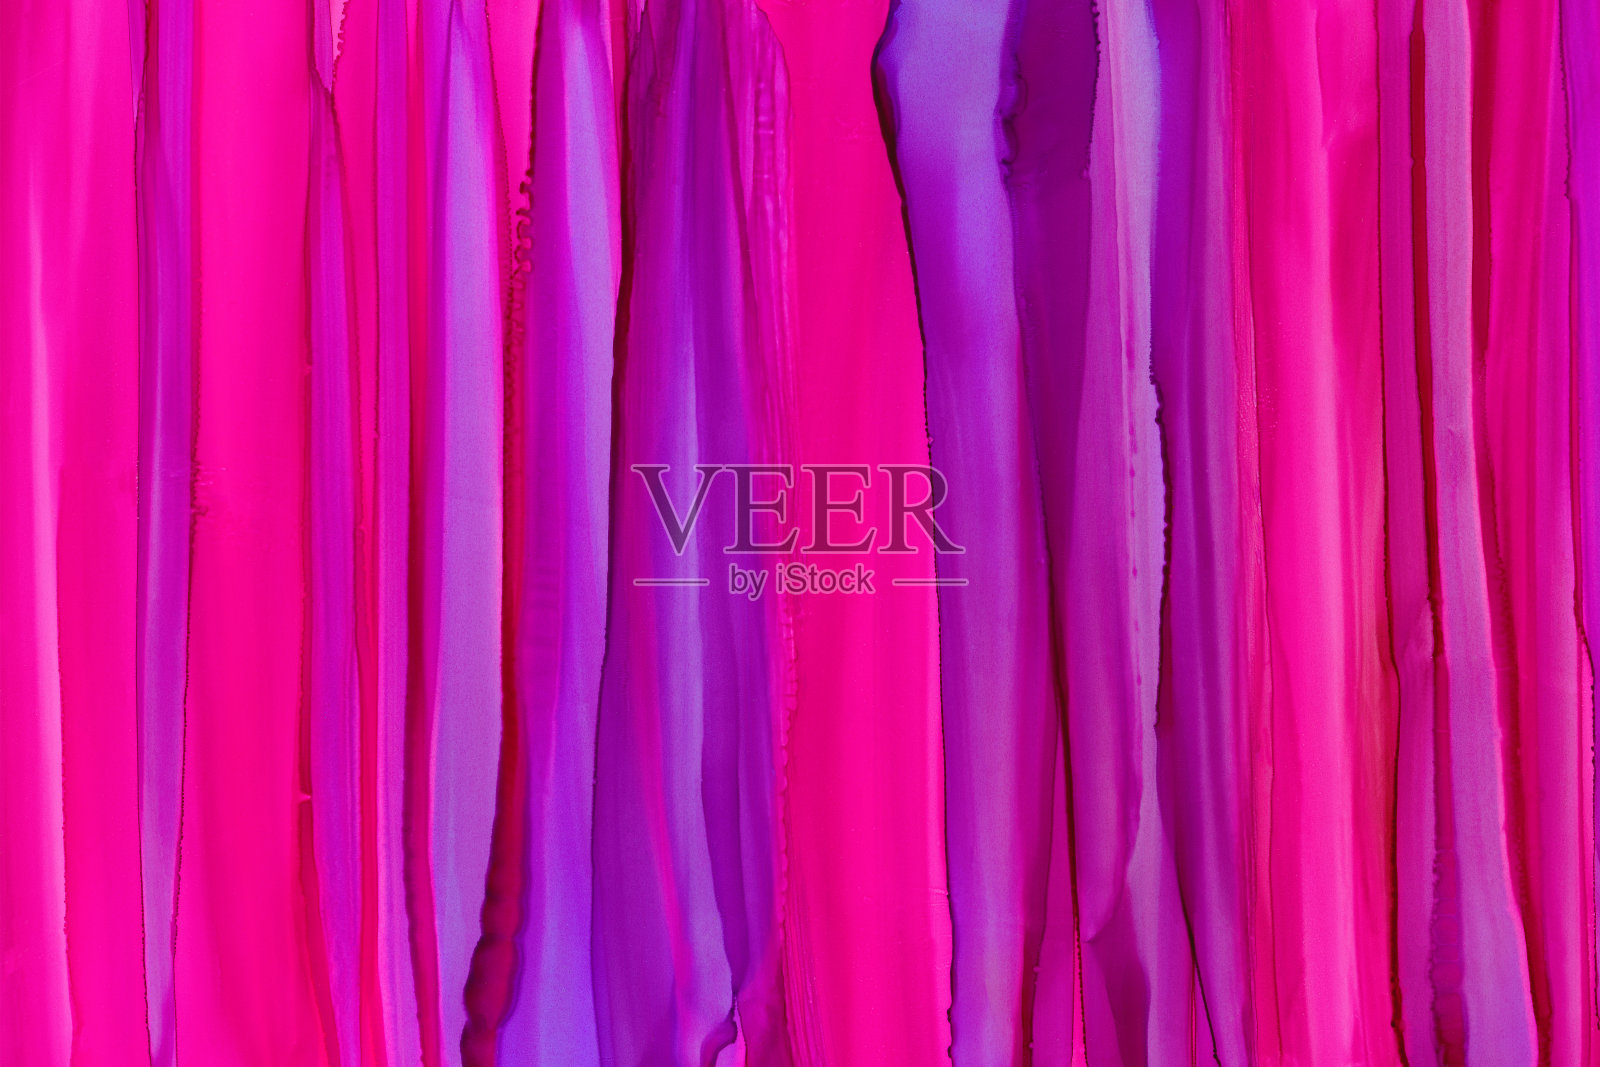 垂直彩色刷波醇墨纹理背景。手绘粉色和紫色抽象颜料污点插画图片素材